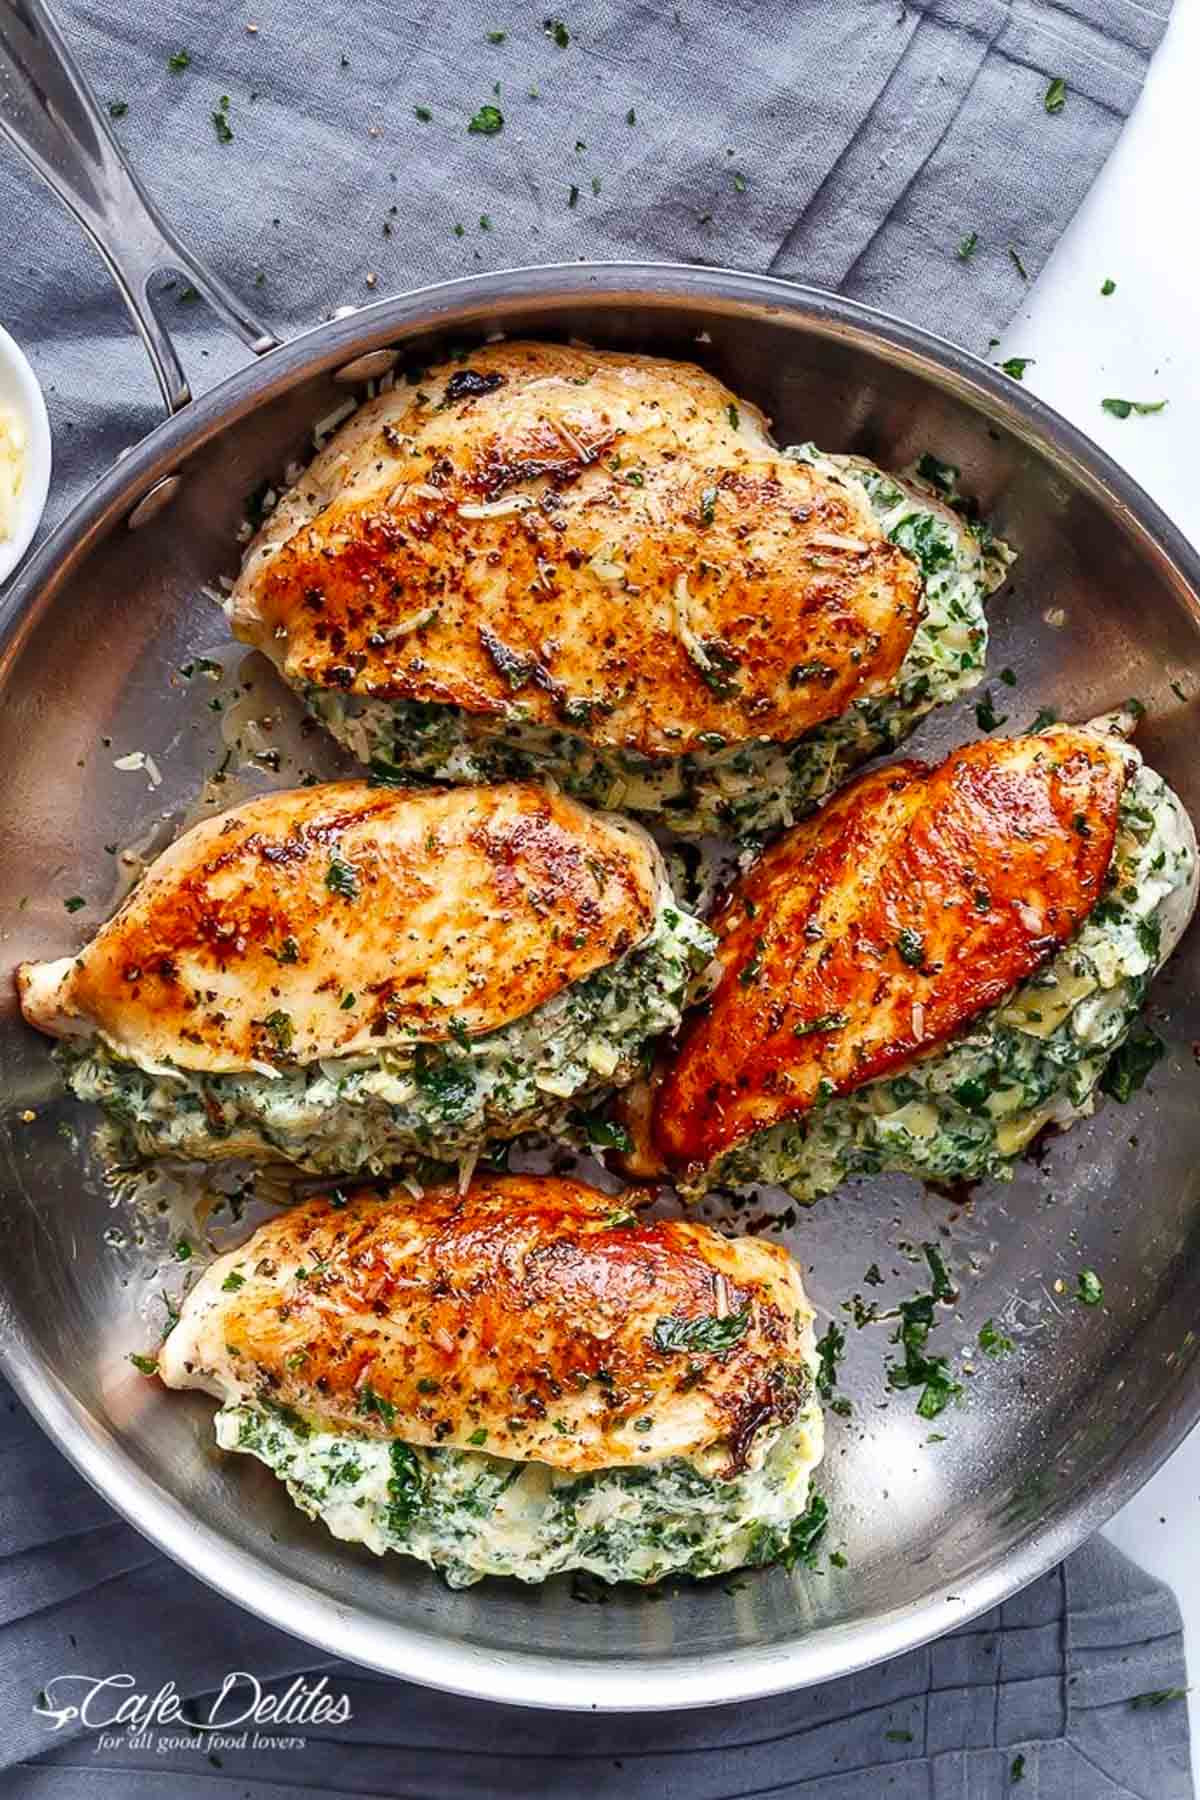 Best Chicken Recipes For Dinner
 70 Best Chicken Dinner Recipes 2017 Top Easy Chicken